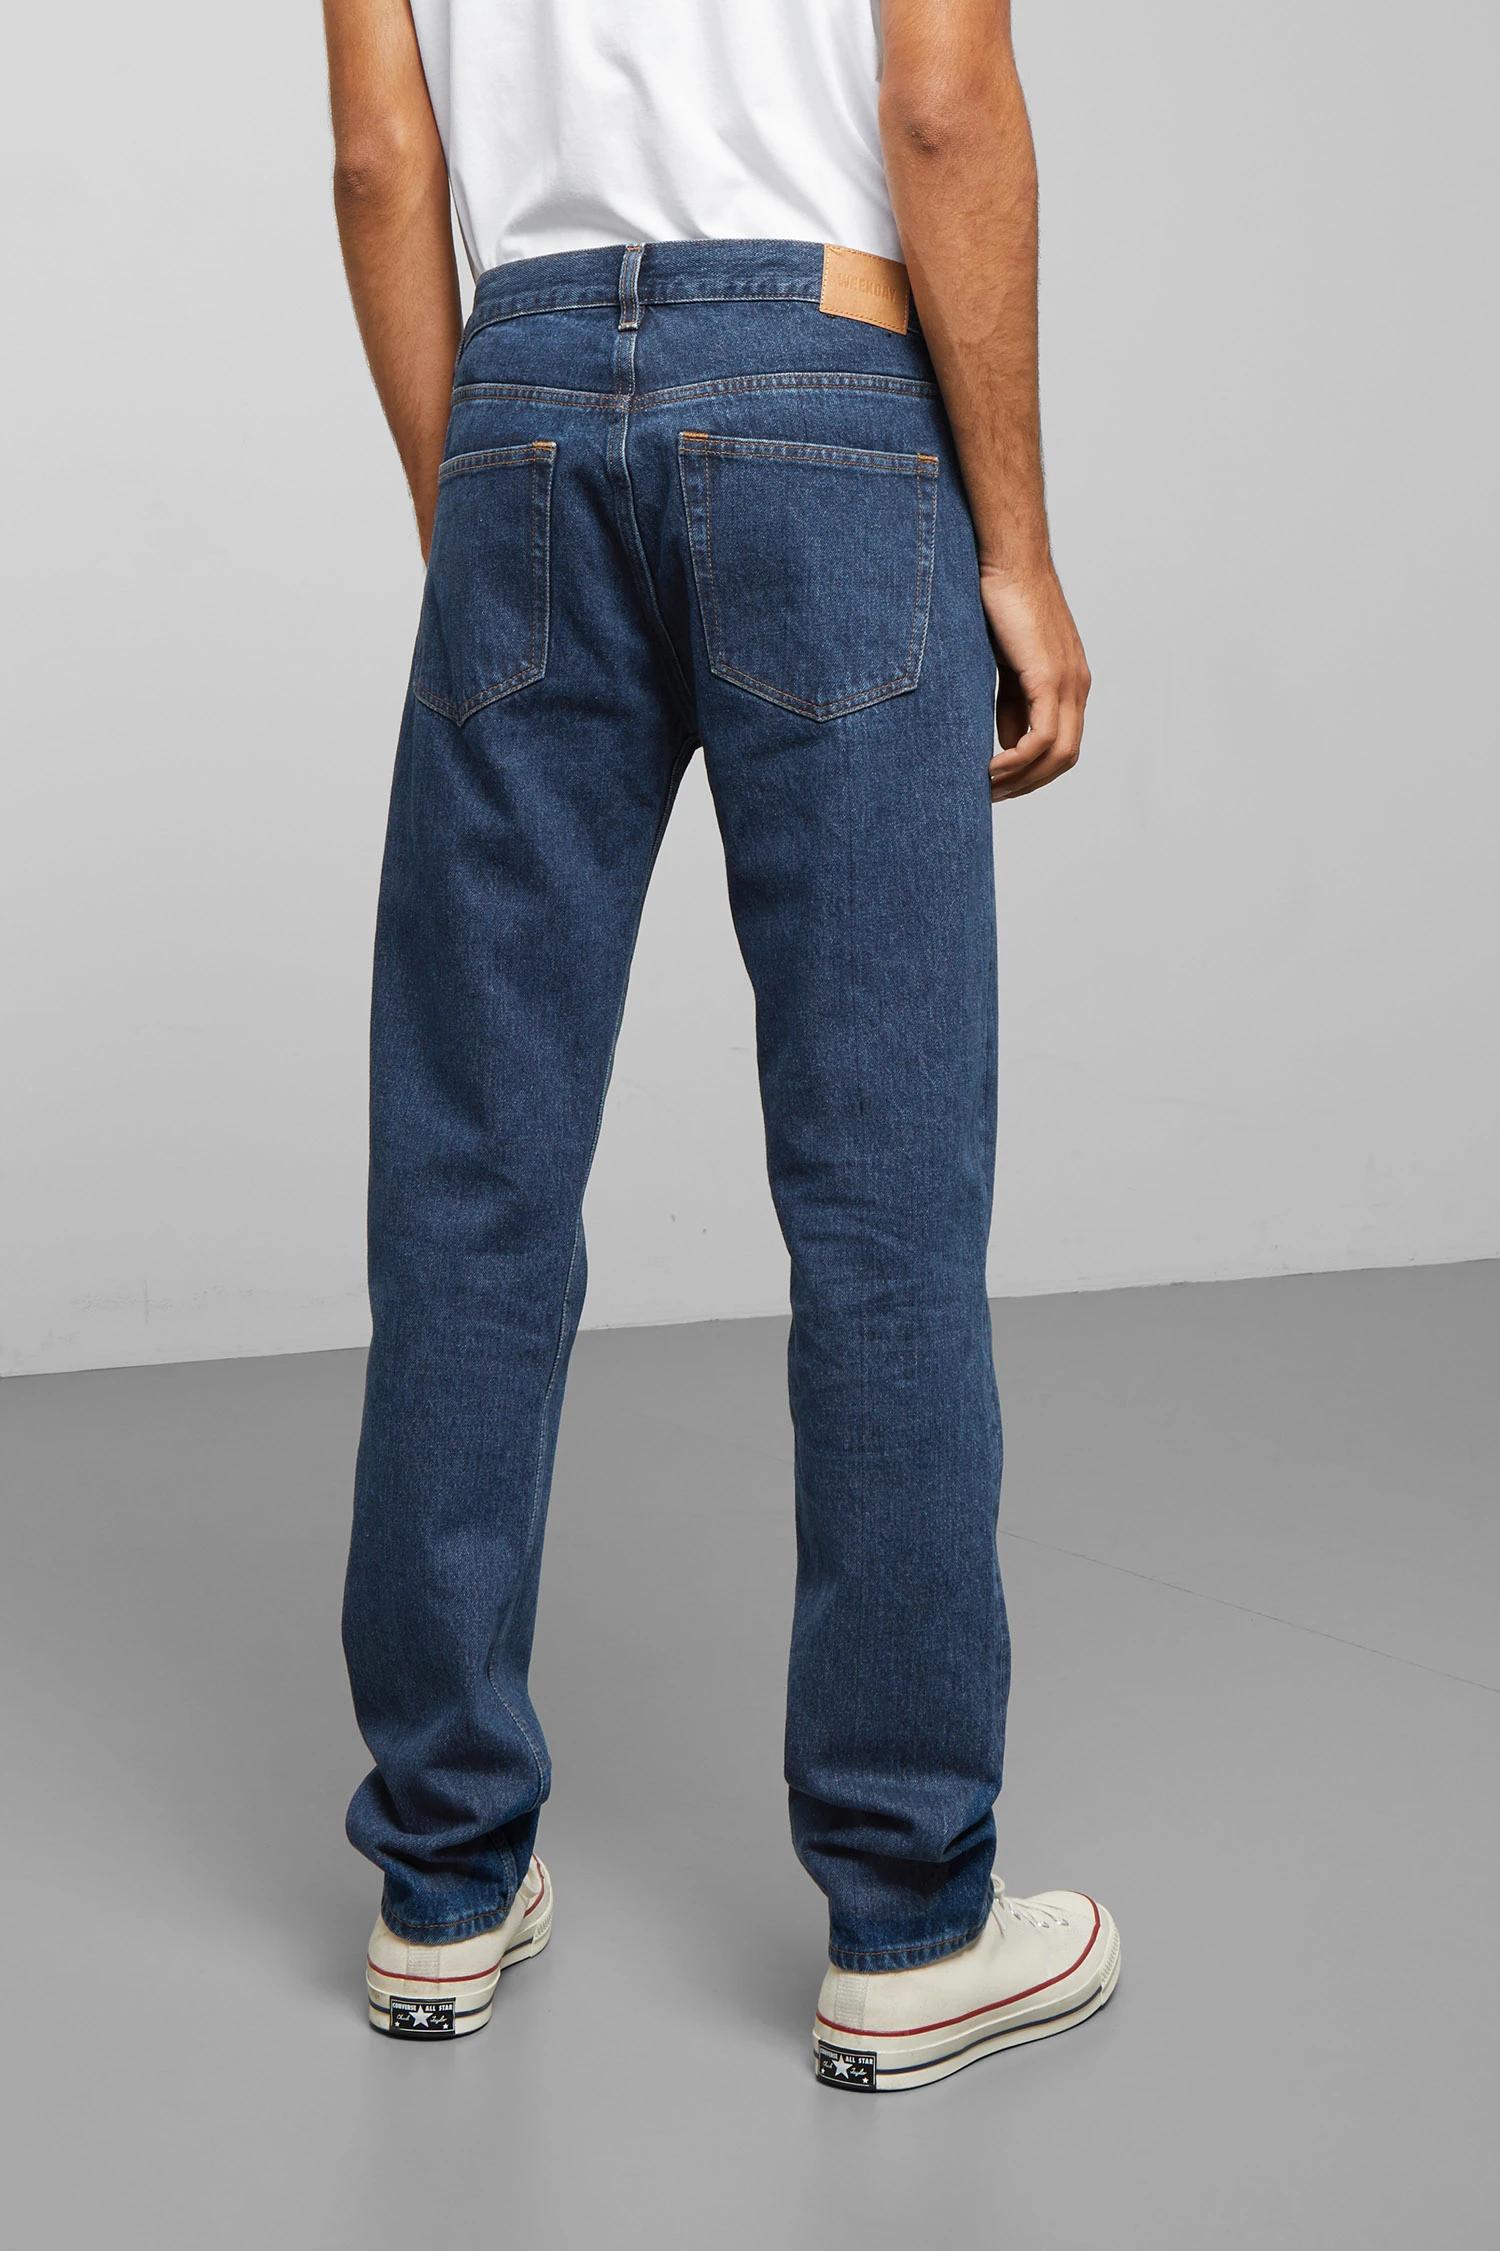 Tegnsætning konvertering hans Weekday Alley Jeans Outlet, SAVE 32% - mpgc.net